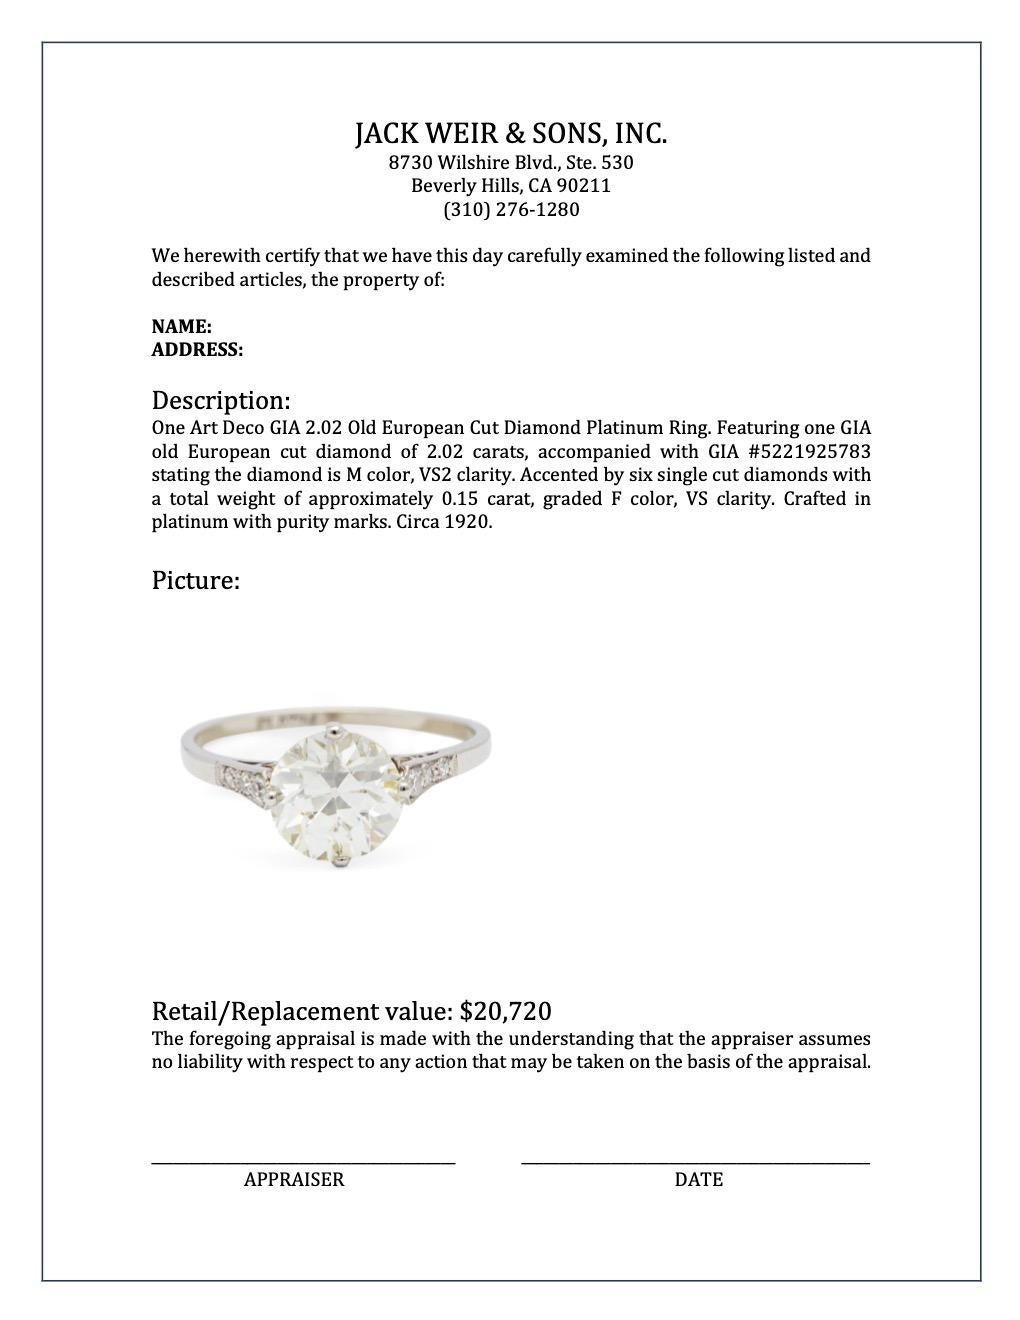 Art Deco GIA 2.02 Old European Cut Diamond Platinum Ring 2